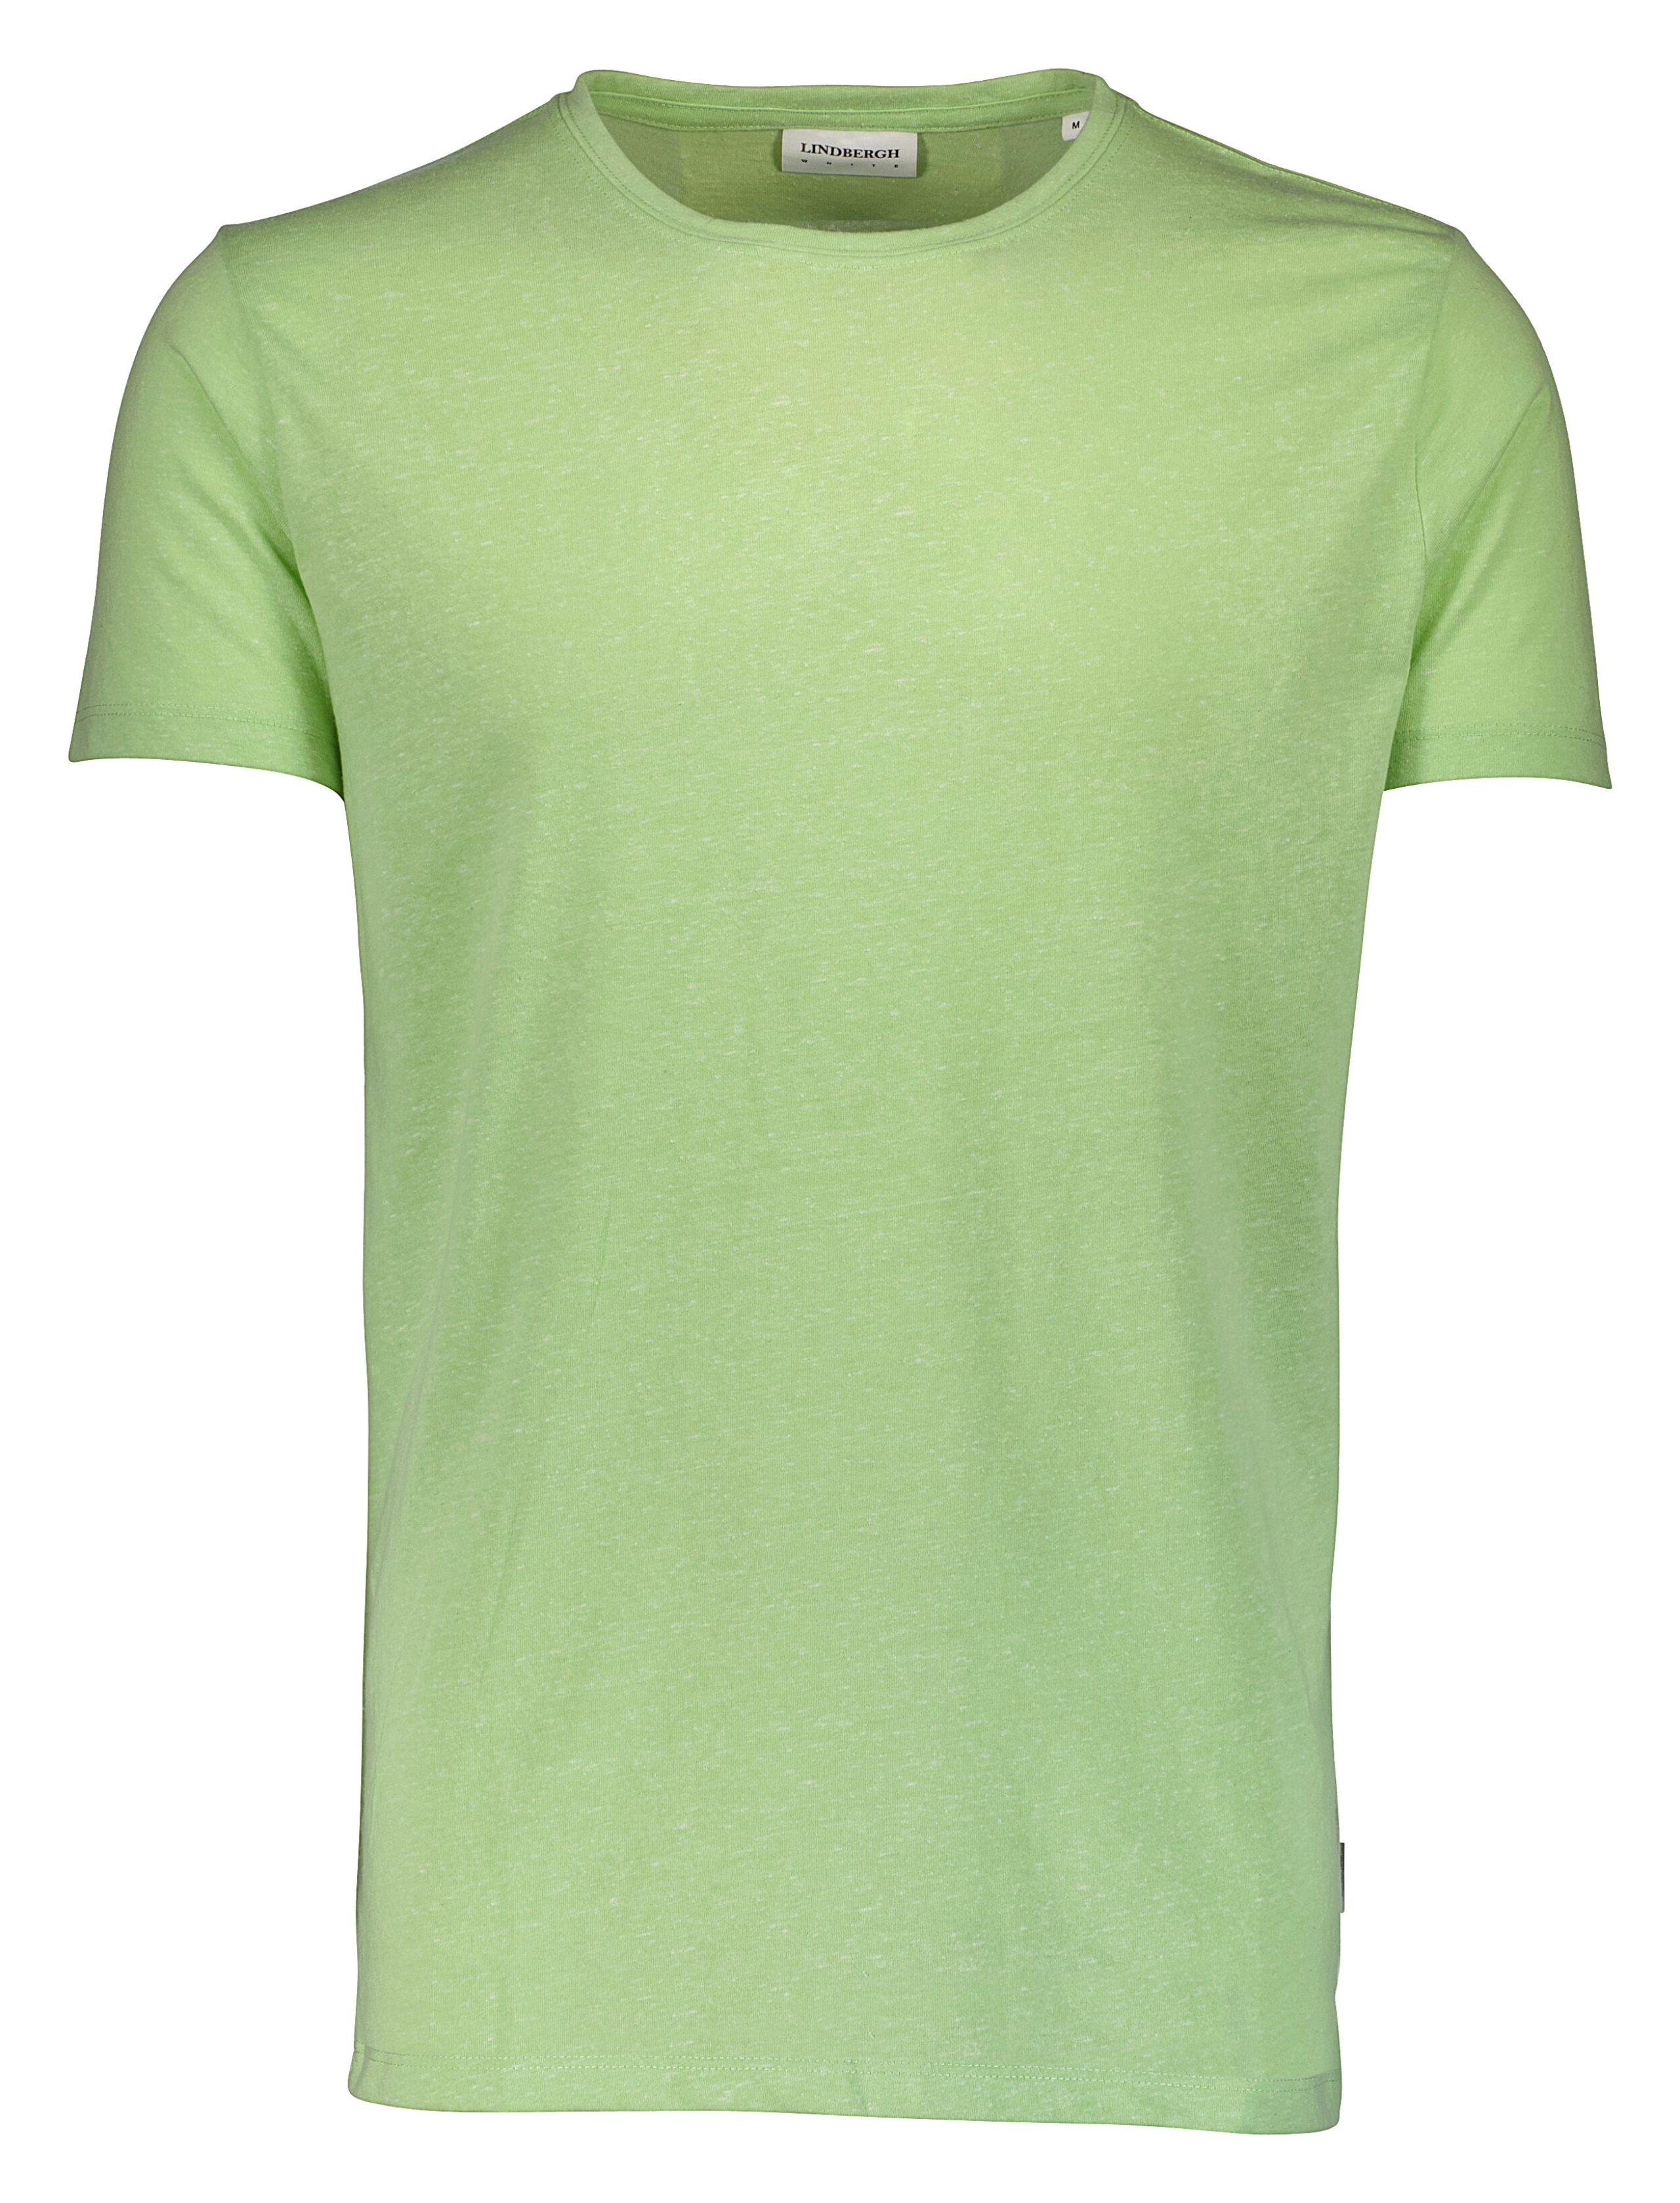 Lindbergh T-shirt grøn / lt green